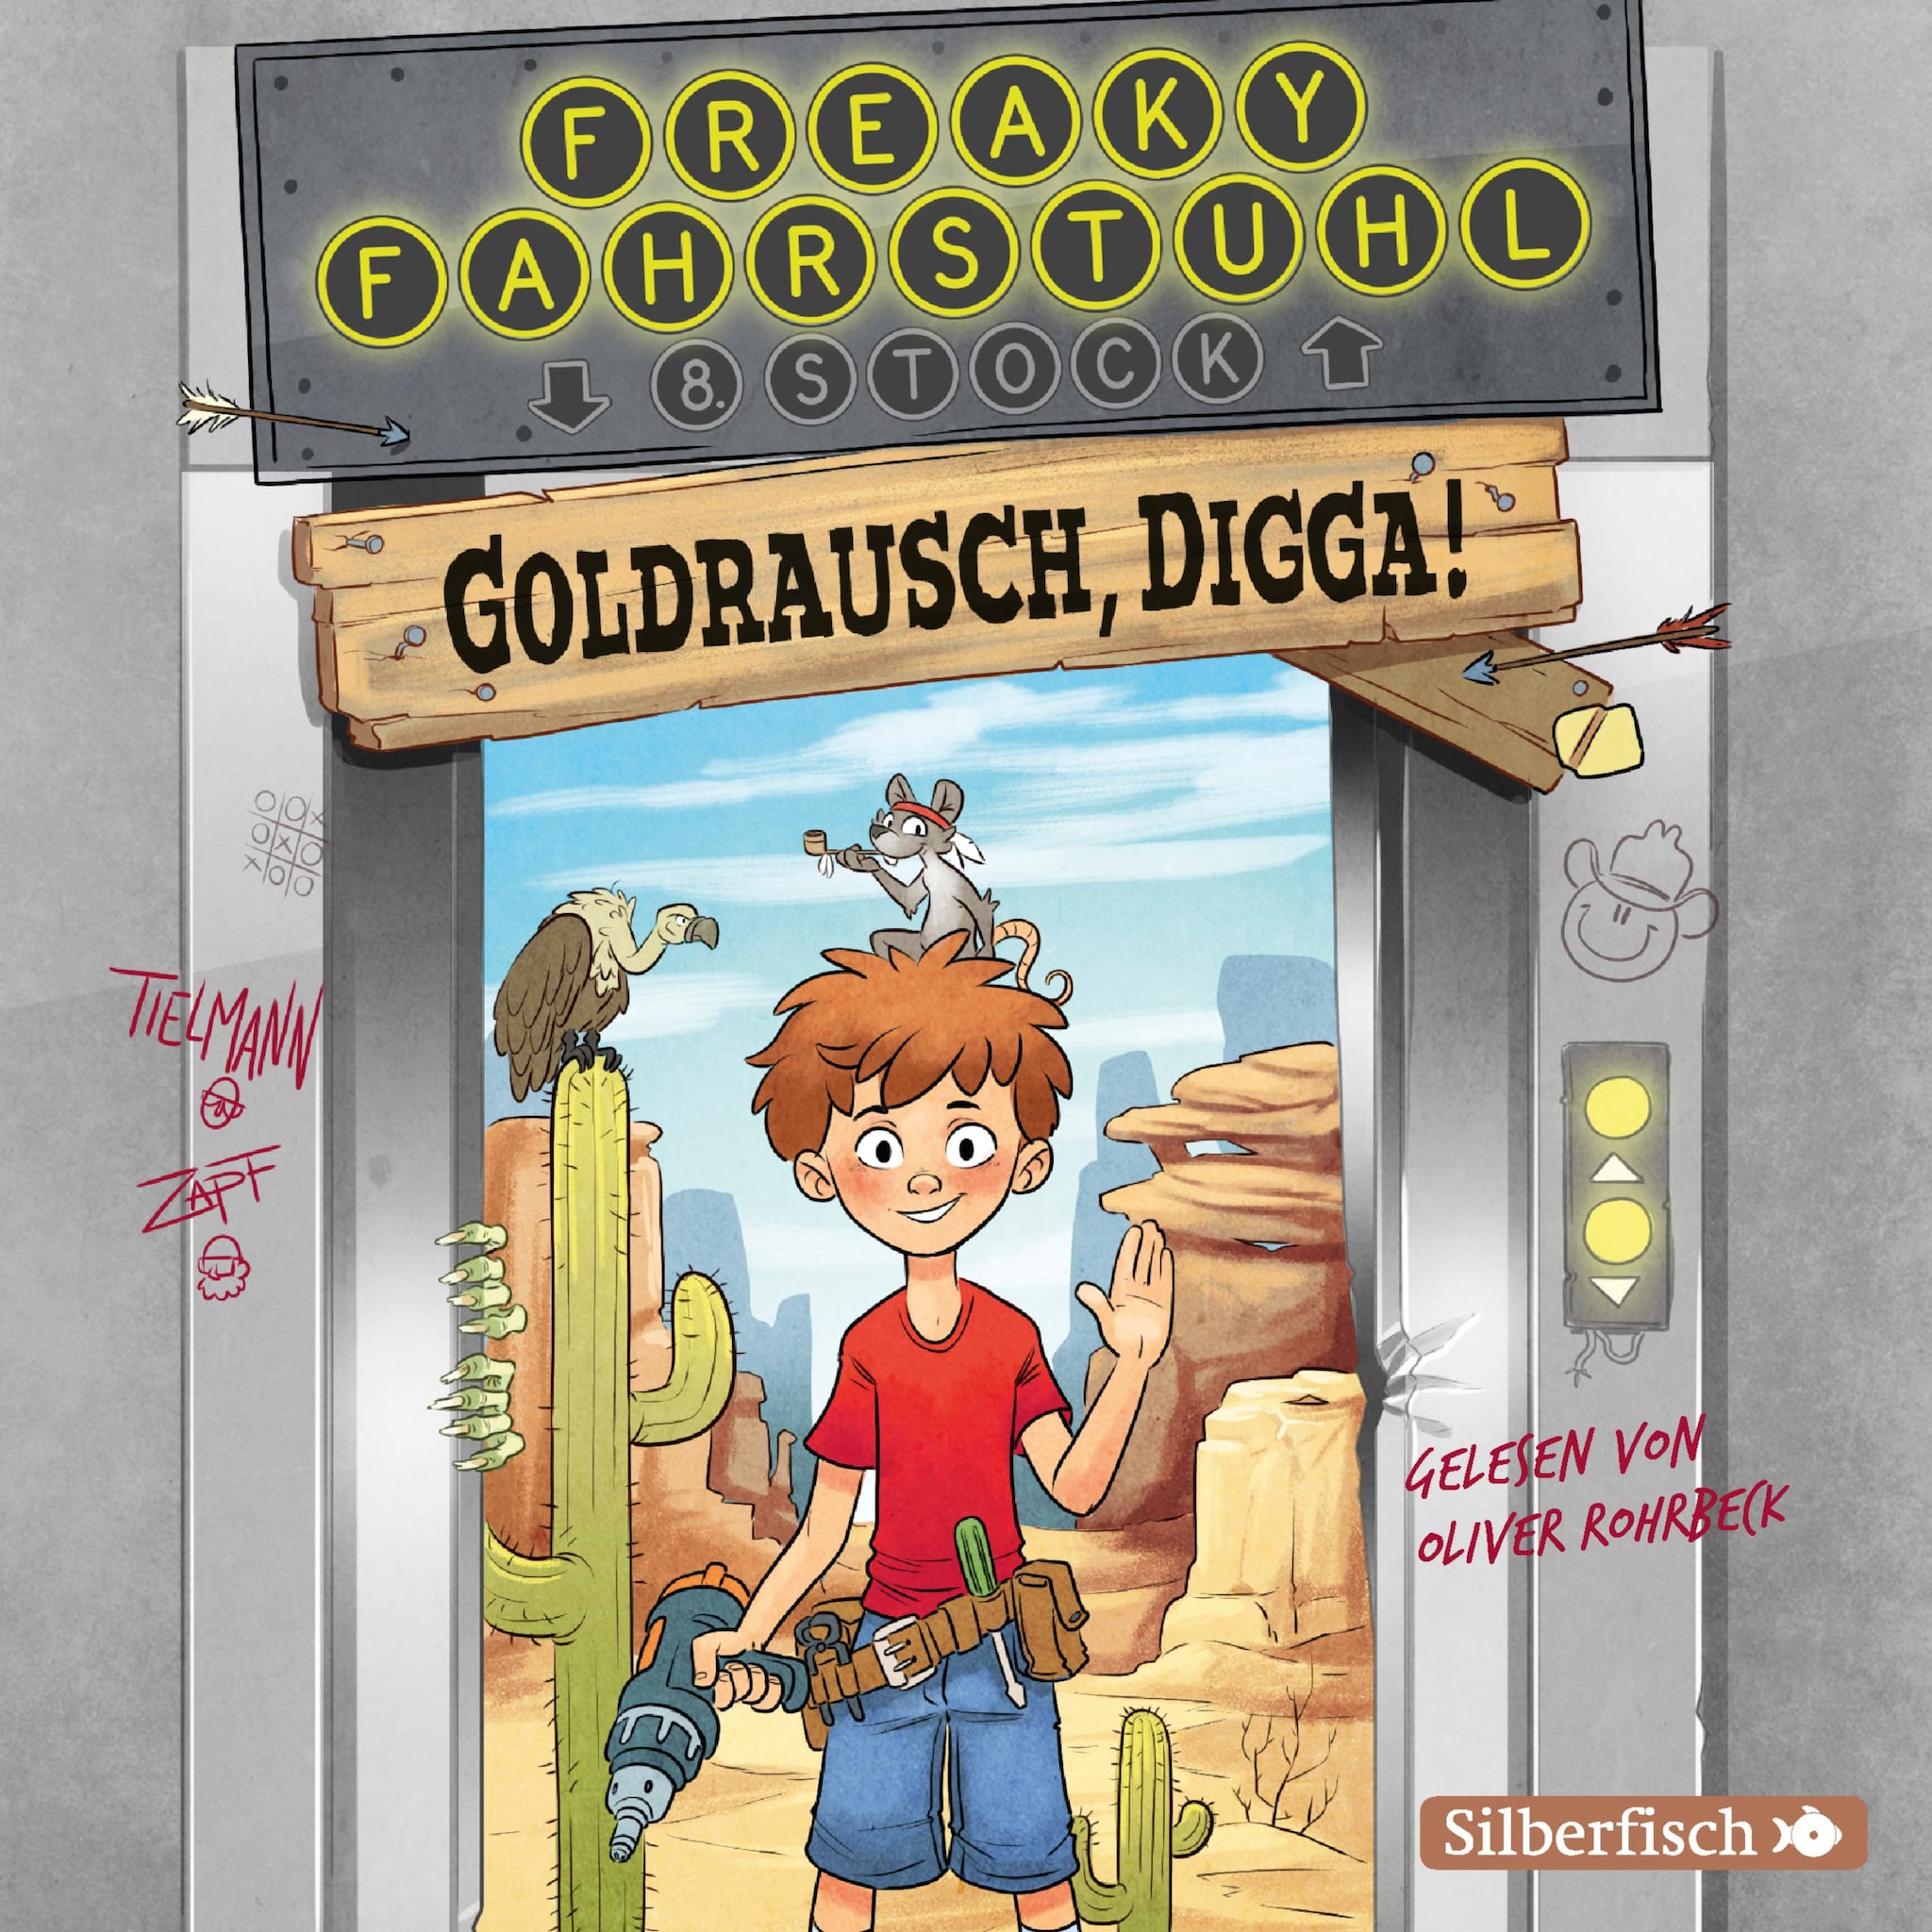 Freaky Fahrstuhl 1: Goldrausch, Digga! ilmaiseksi